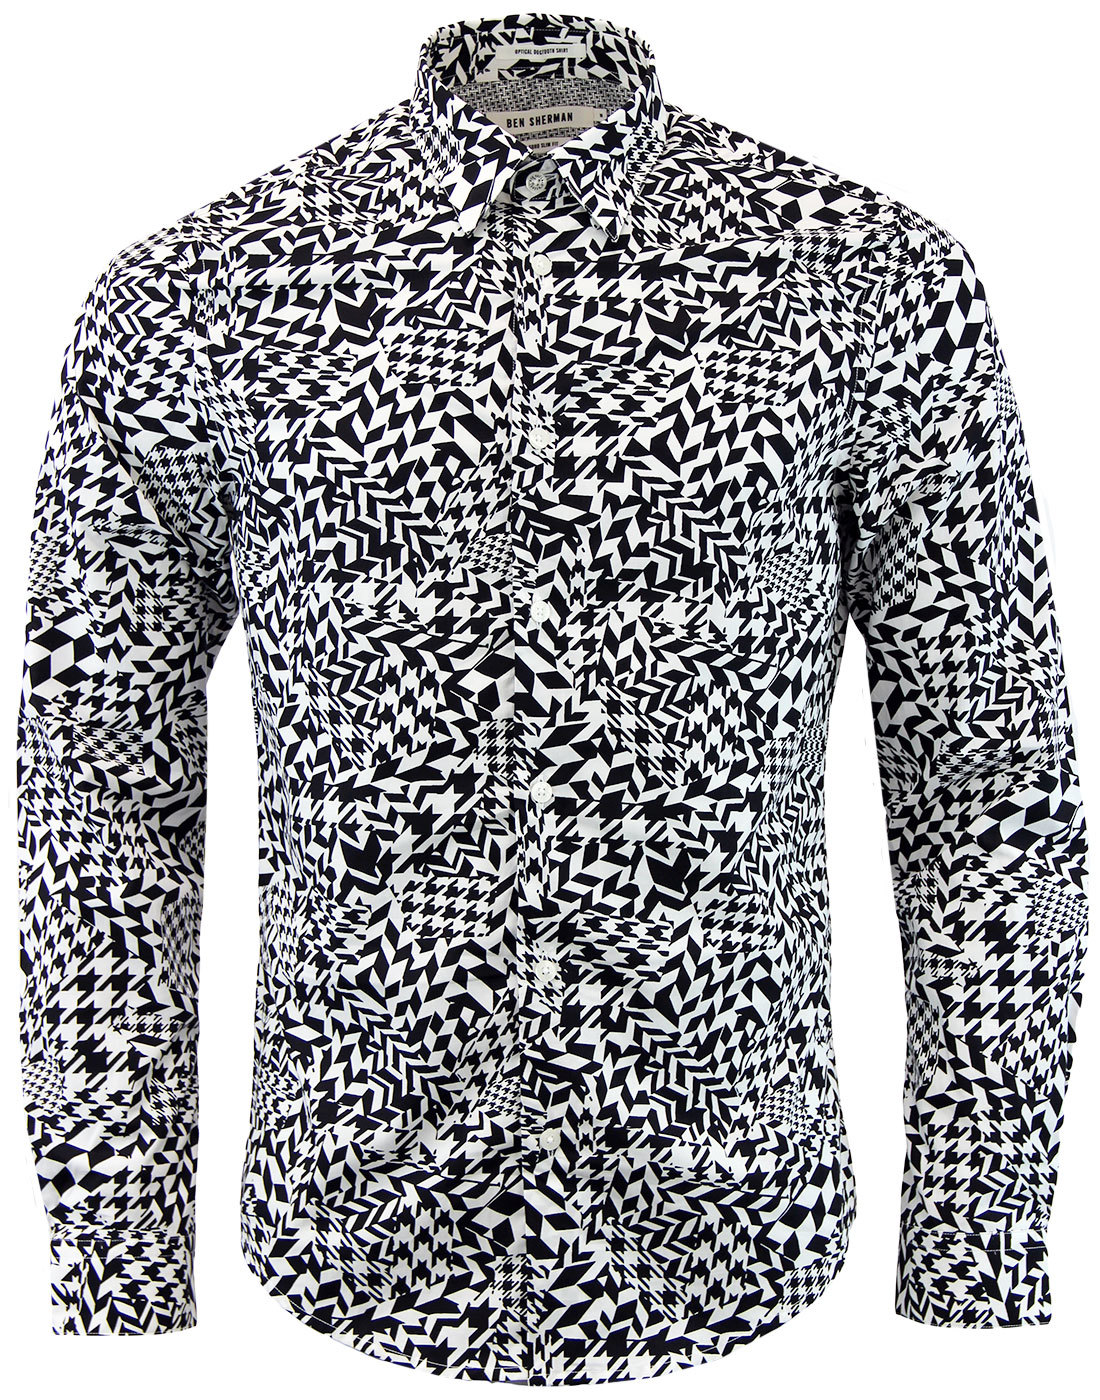 BEN SHERMAN Optical Dogtooth Abstract Mod Shirt